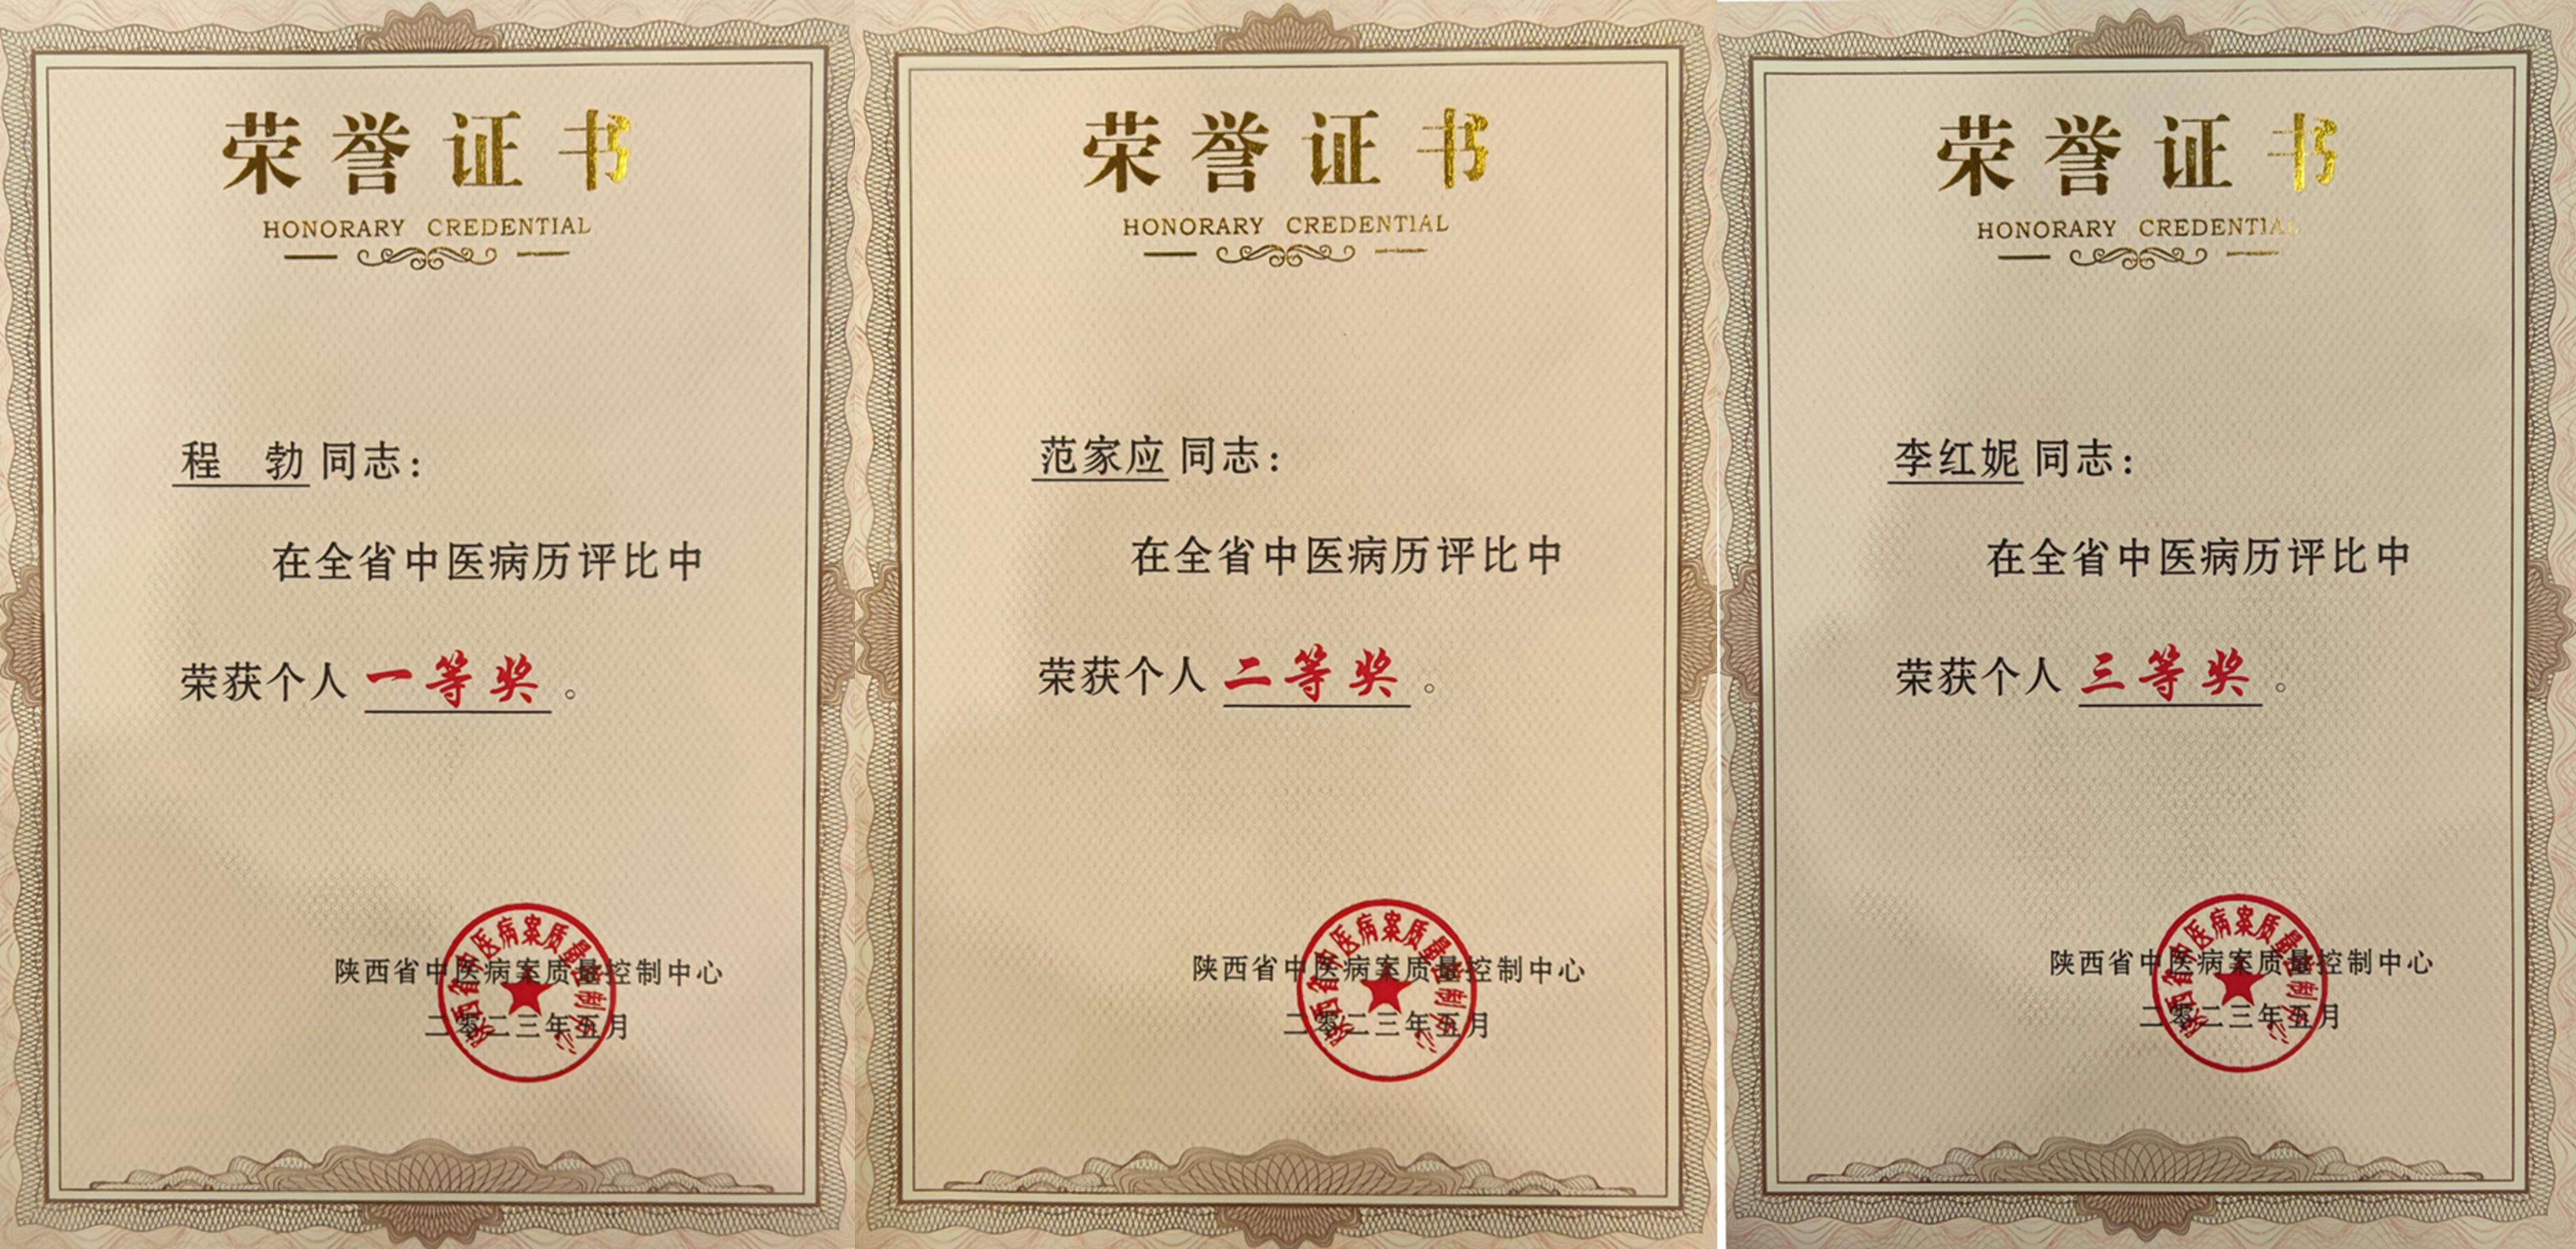 西安中医脑病医院在陕西省中医病历评比中获多项殊荣